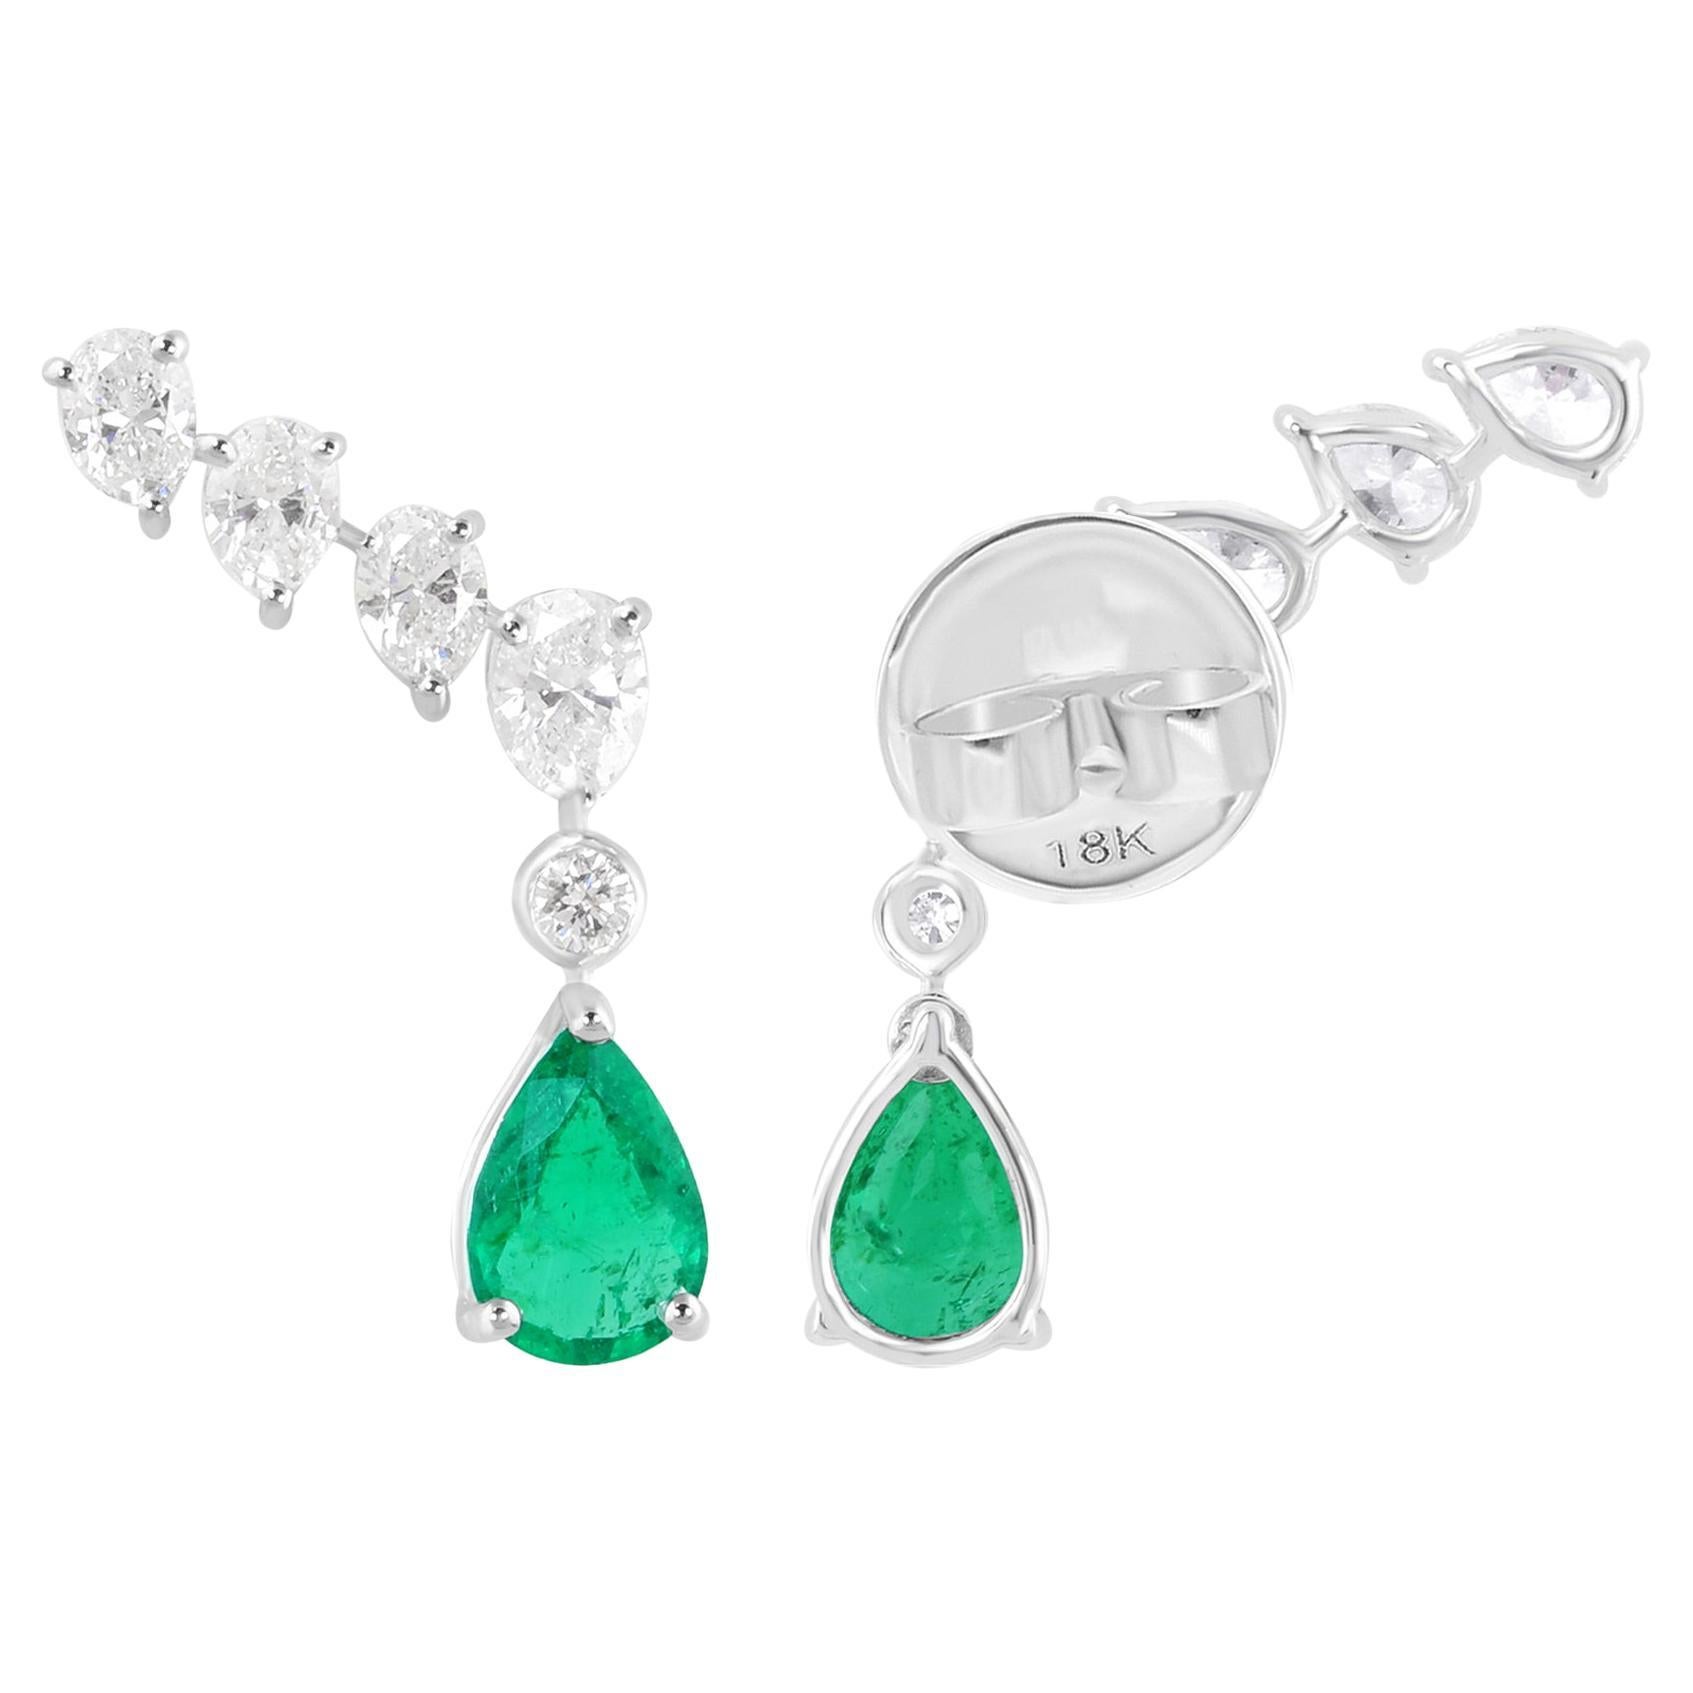 Zambian Emerald Ear Clamber Earrings Diamond 18 Karat White Gold Fine Jewelry